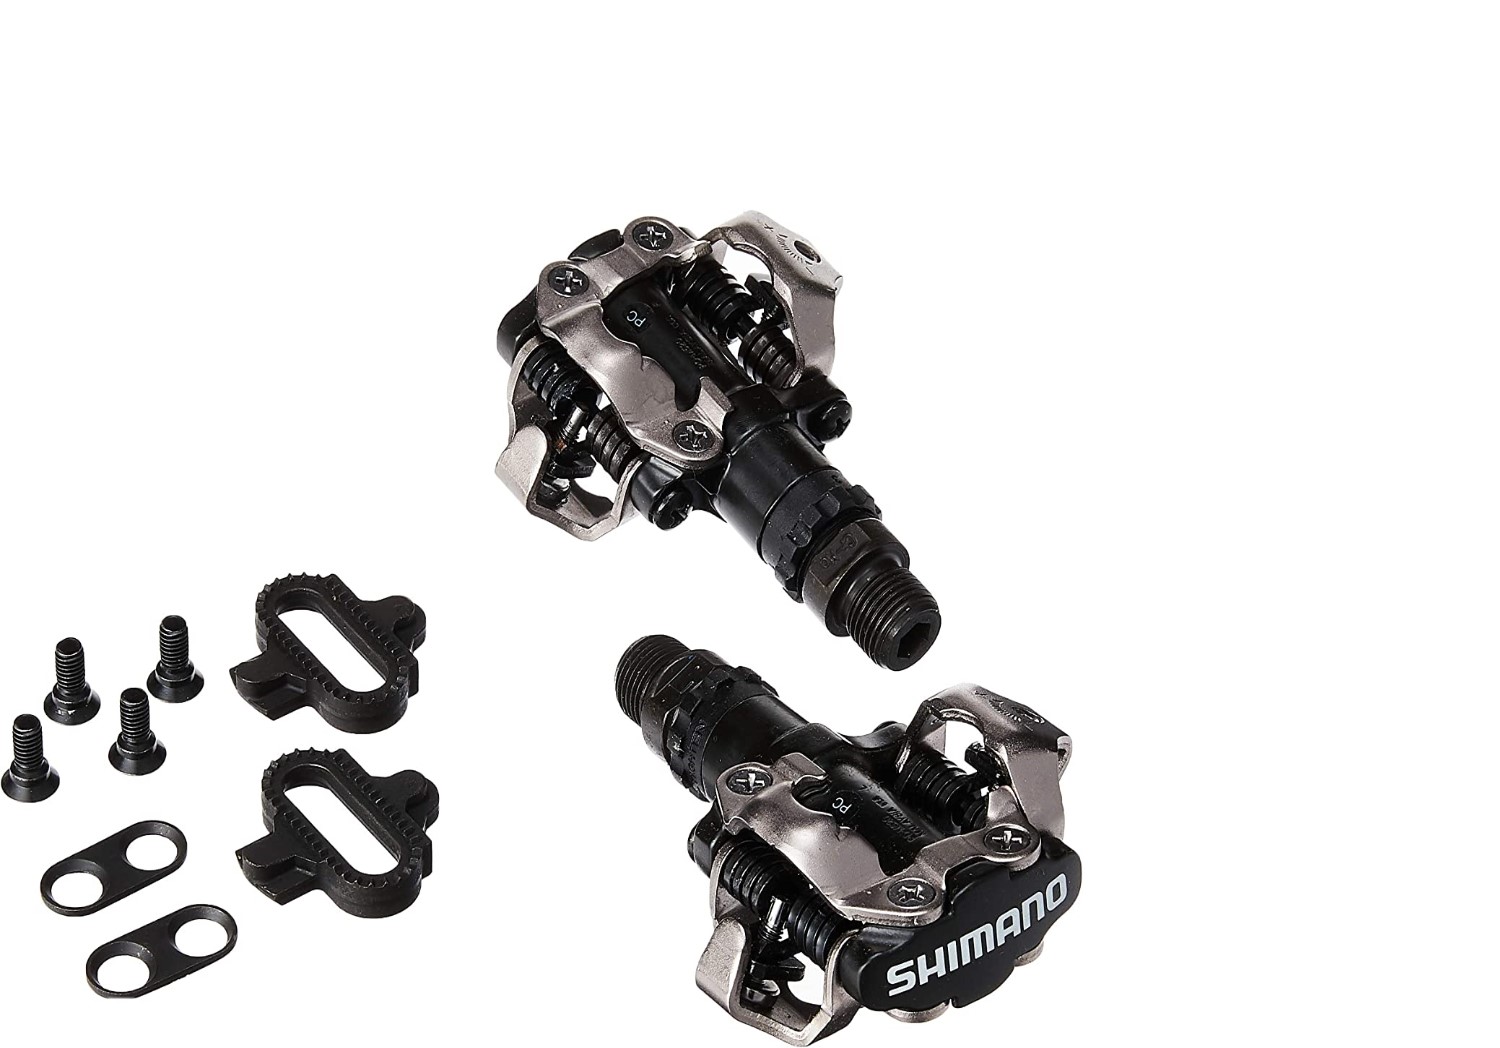 Shimano M520 SPD-SL  MTB Pedals